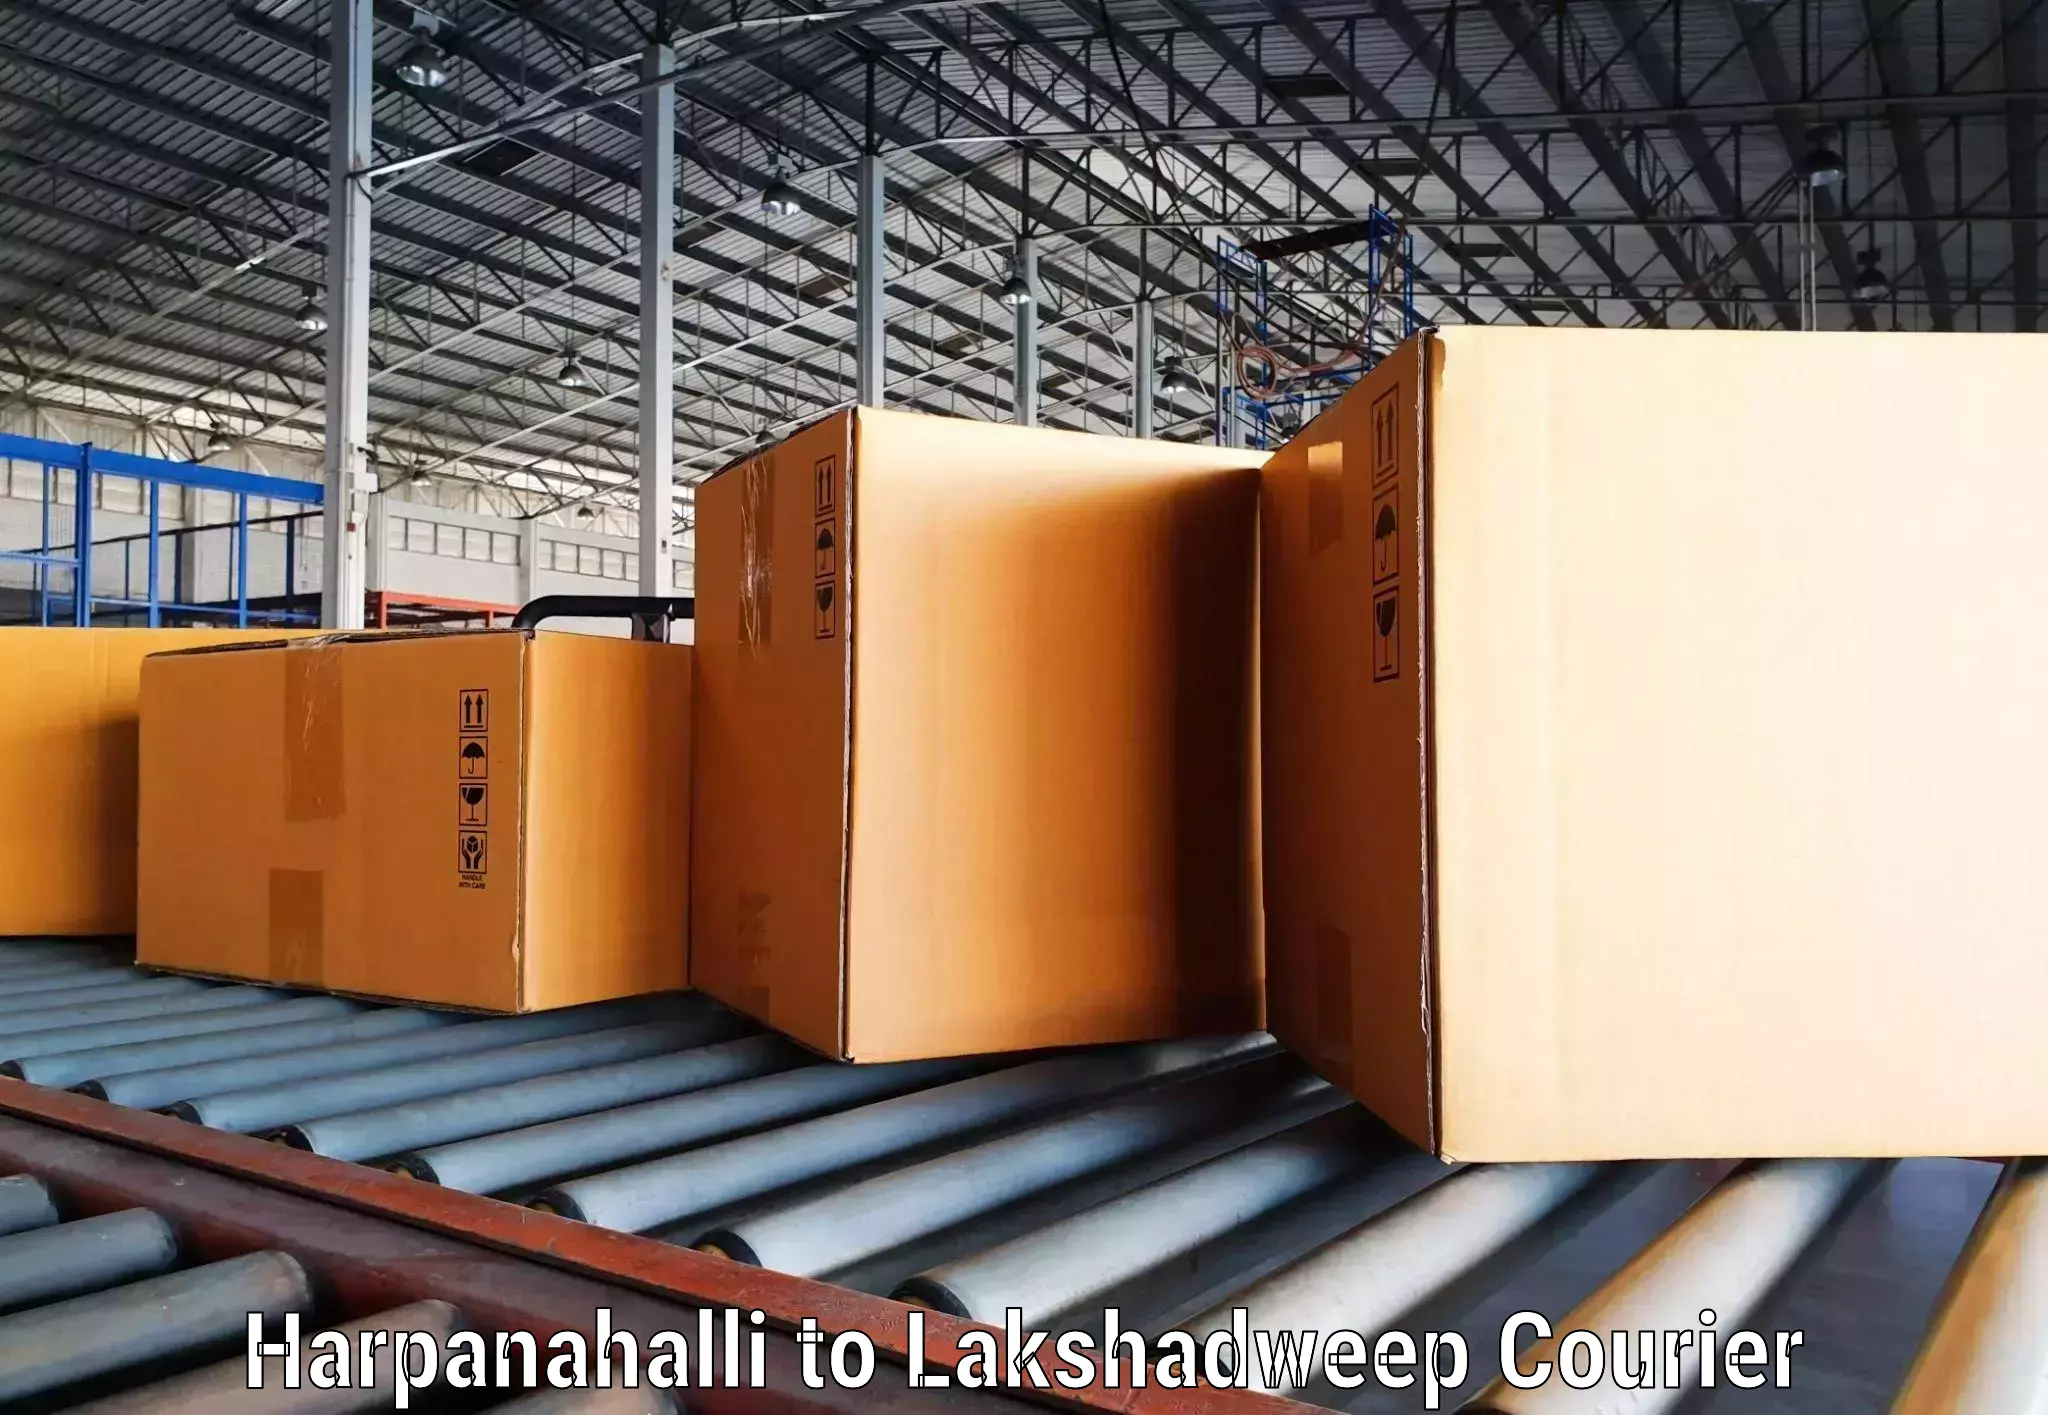 Efficient shipping operations Harpanahalli to Lakshadweep